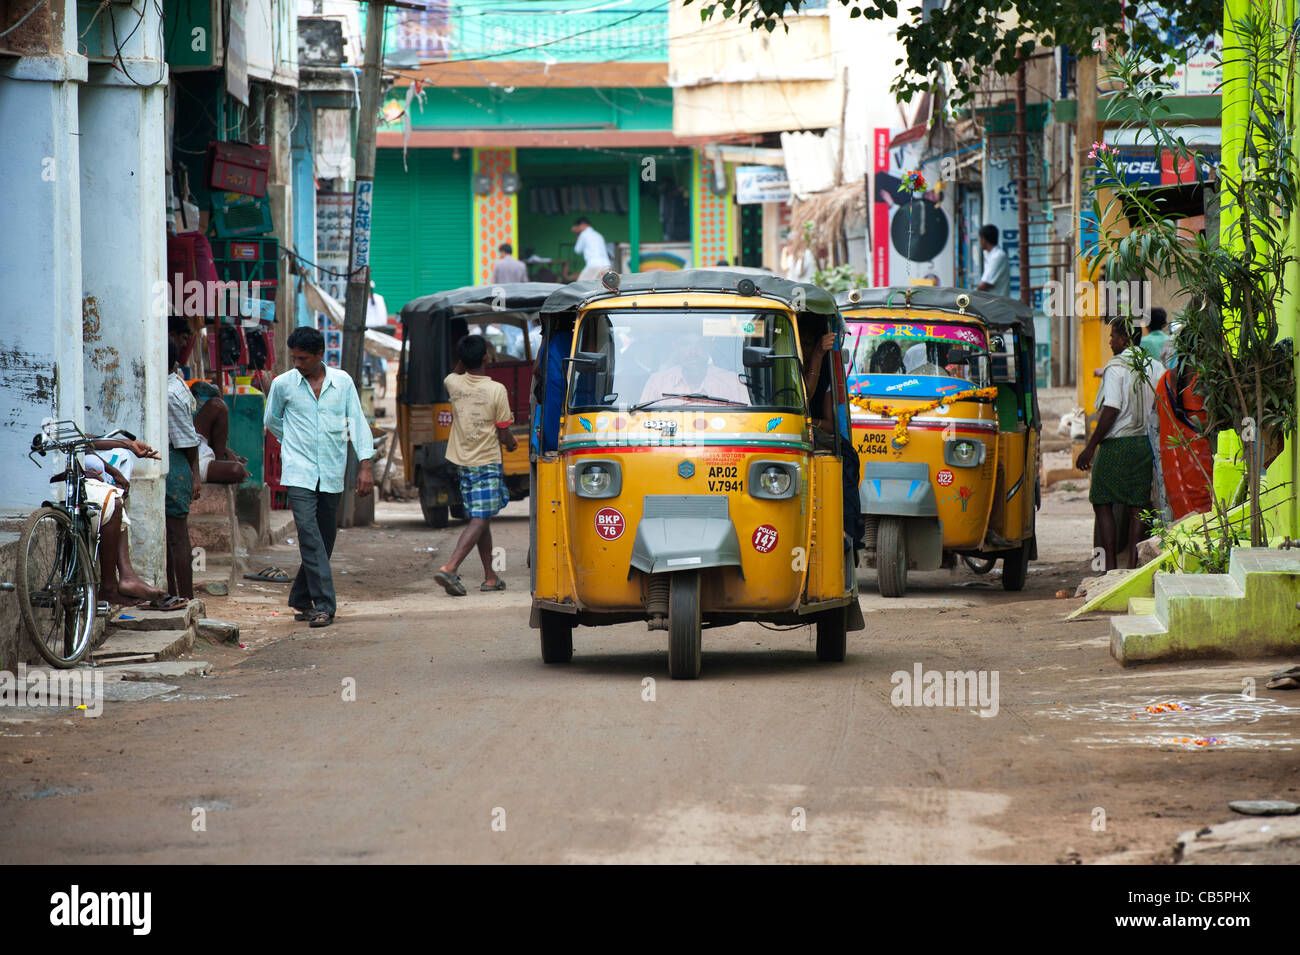 Auto rickshaws indiens dans une ville. L'Andhra Pradesh, Inde Banque D'Images